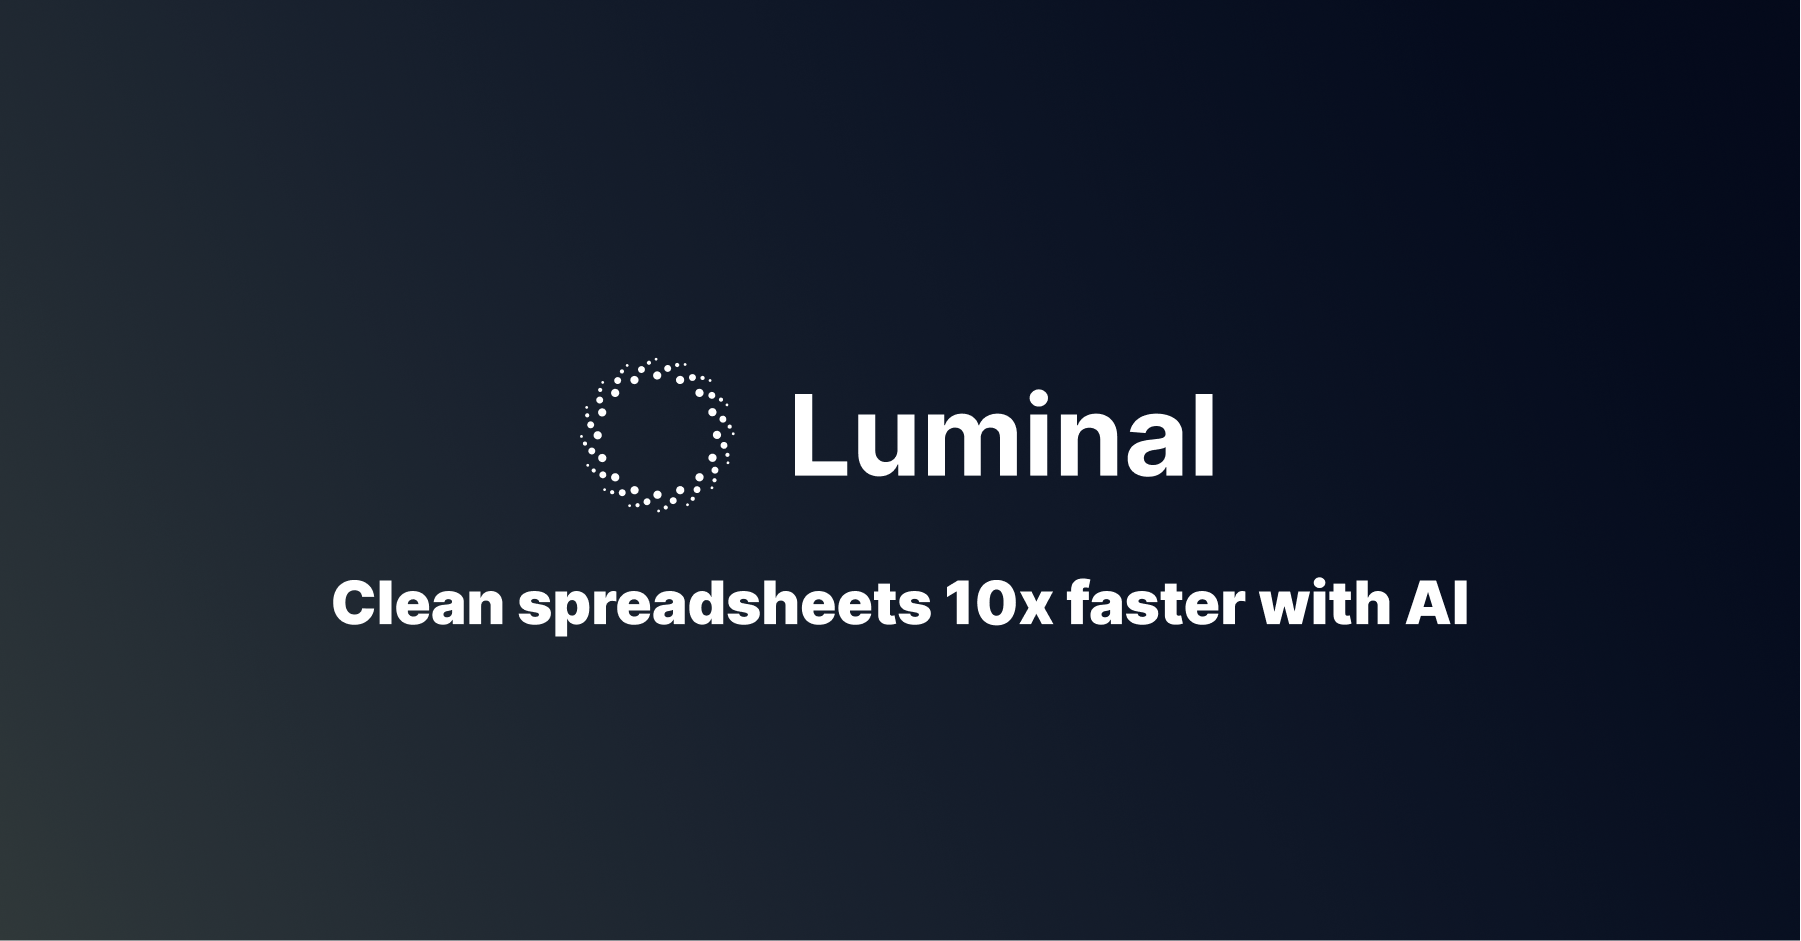 Luminal-スプレッドシートのインポートとデータ処理のためのツール